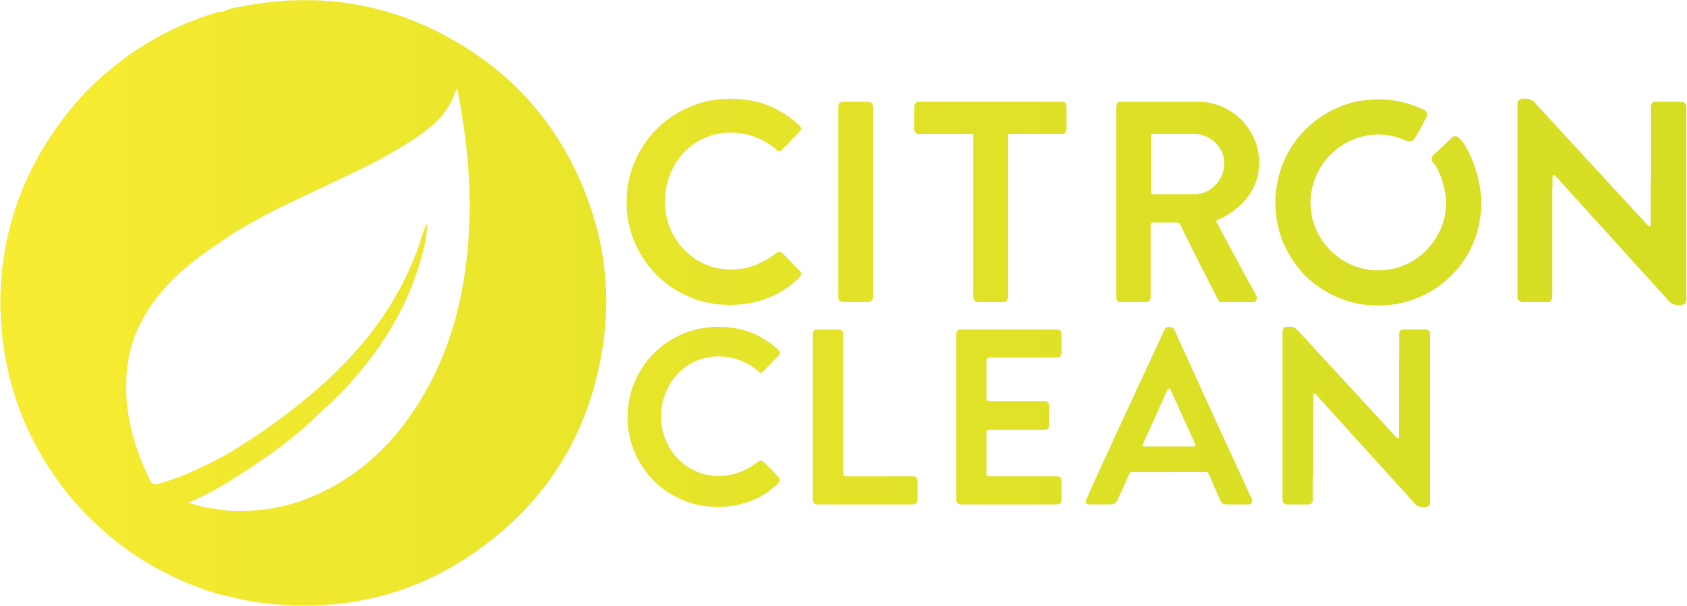 Citron Clean Logo